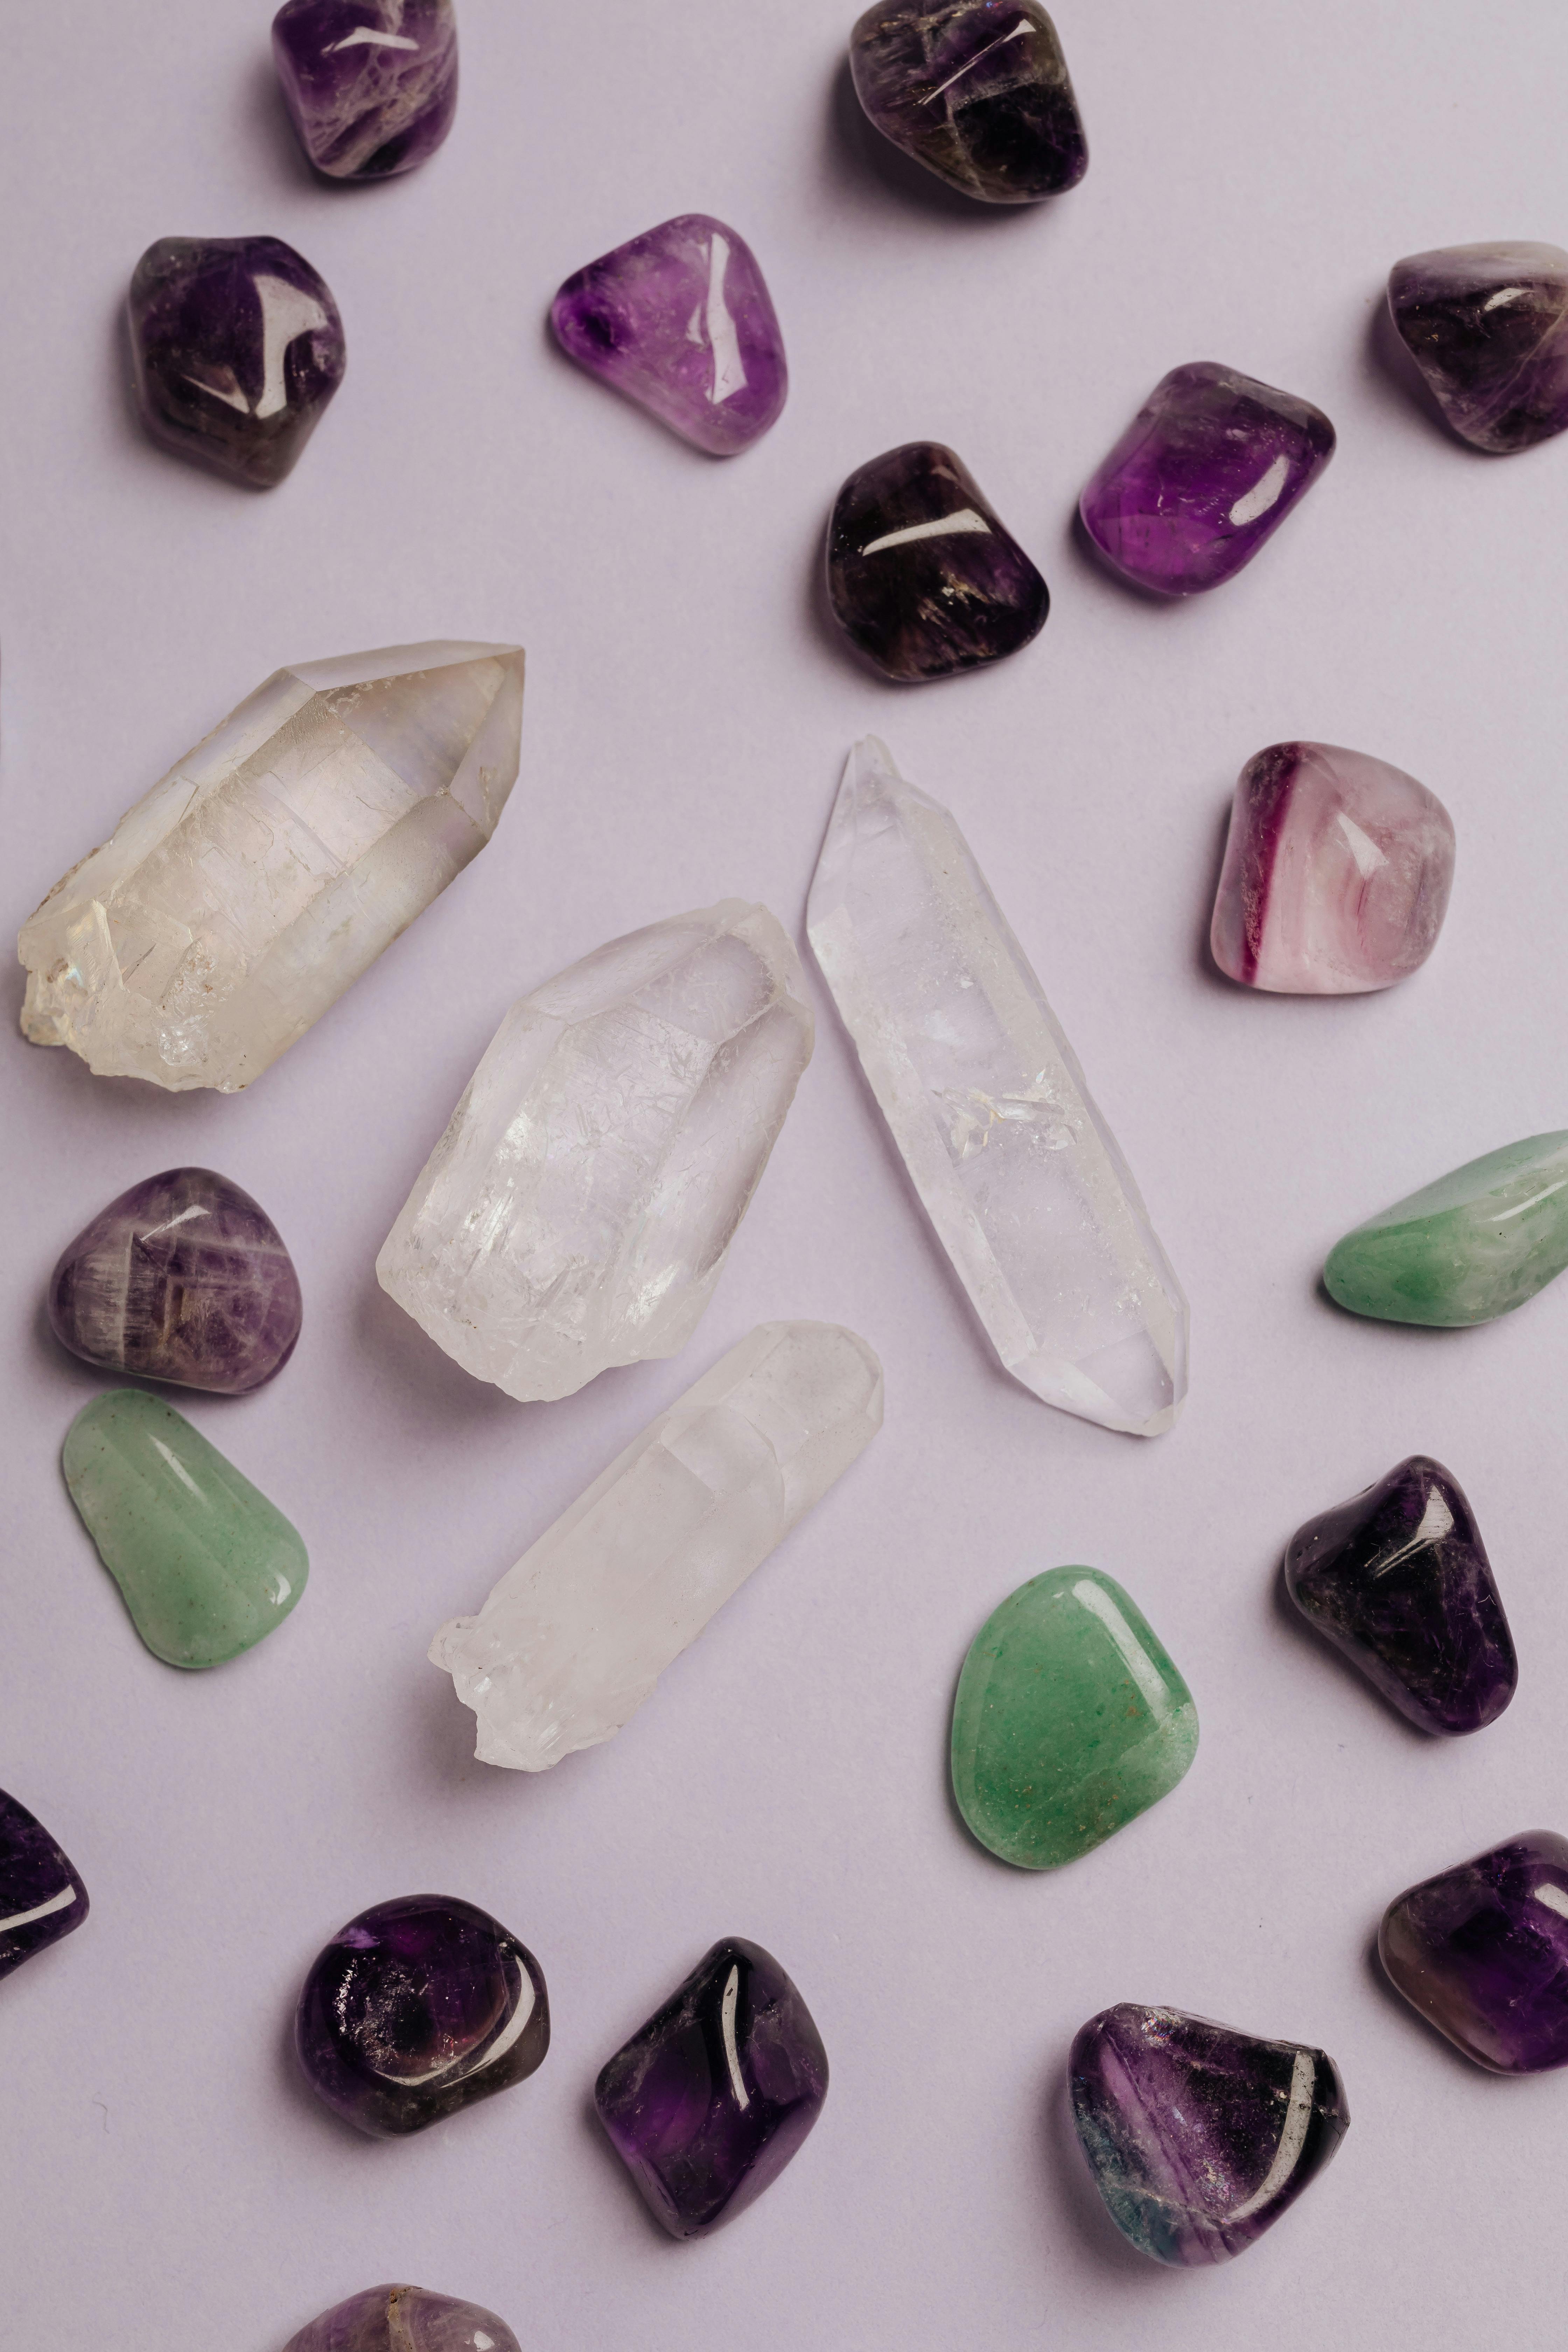 Des cristaux assortis | Source : Pexels